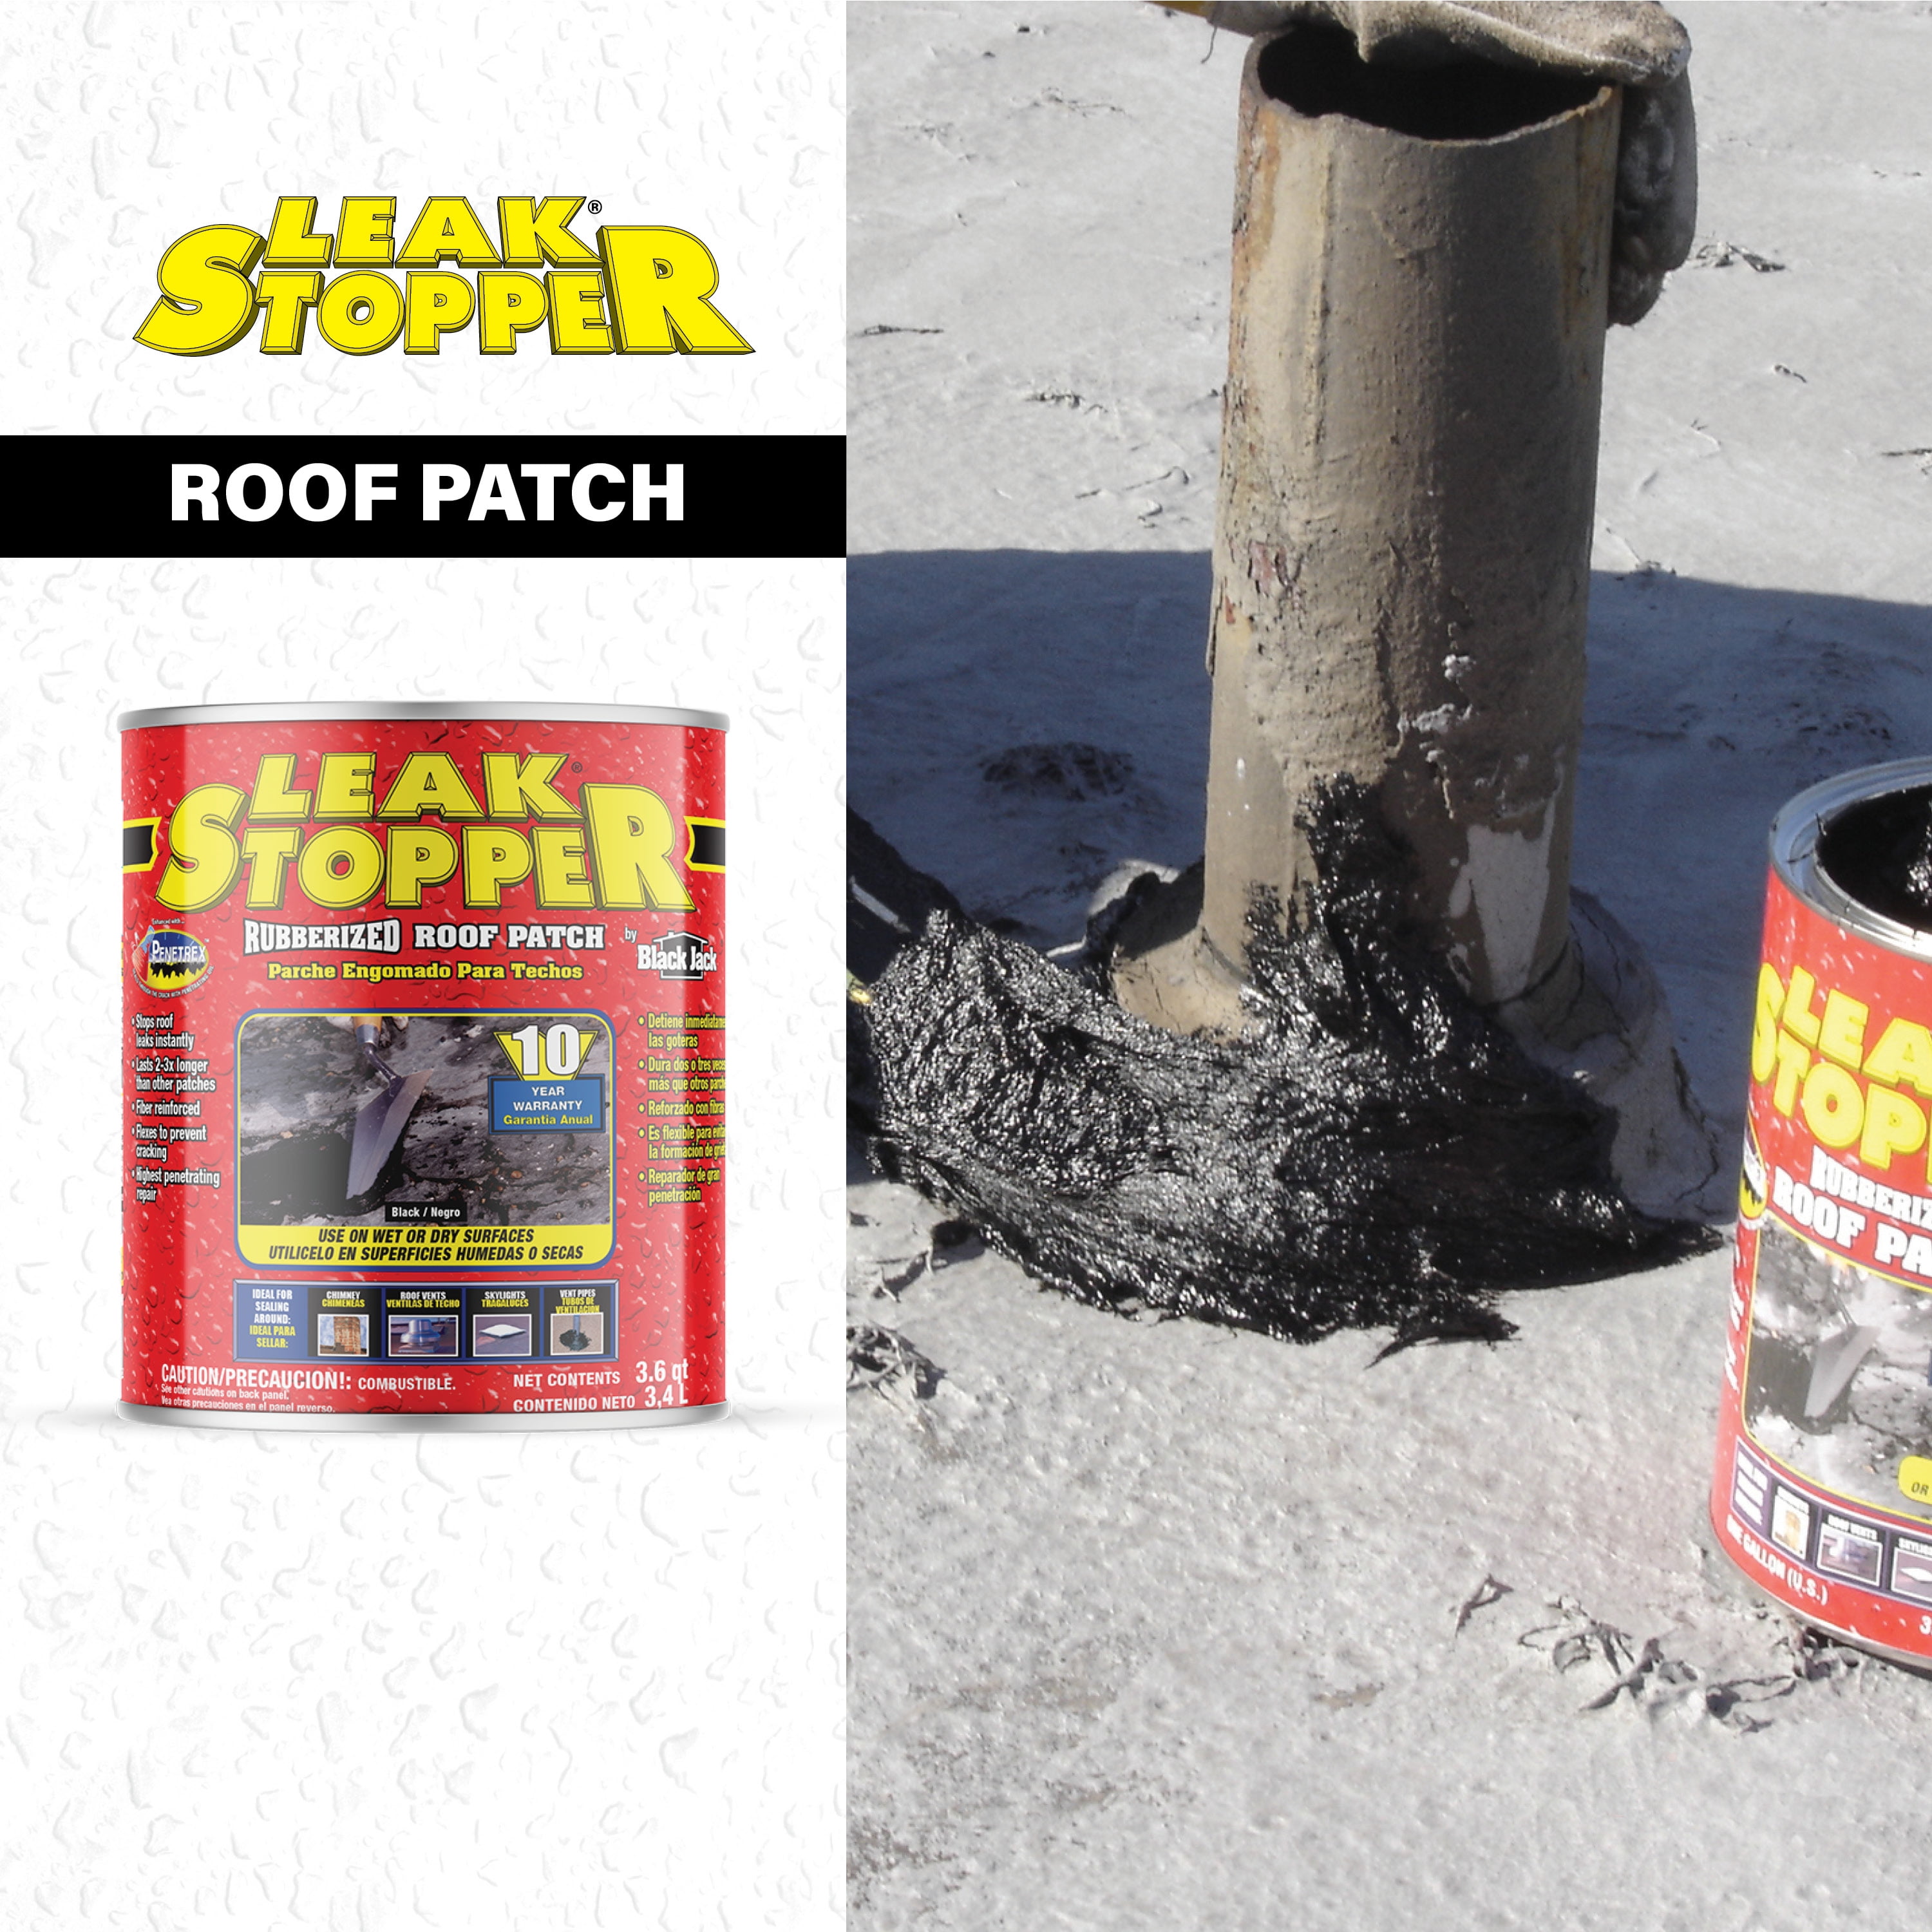 Leak Stopper Rubberized Roof Patch 1 Gallon